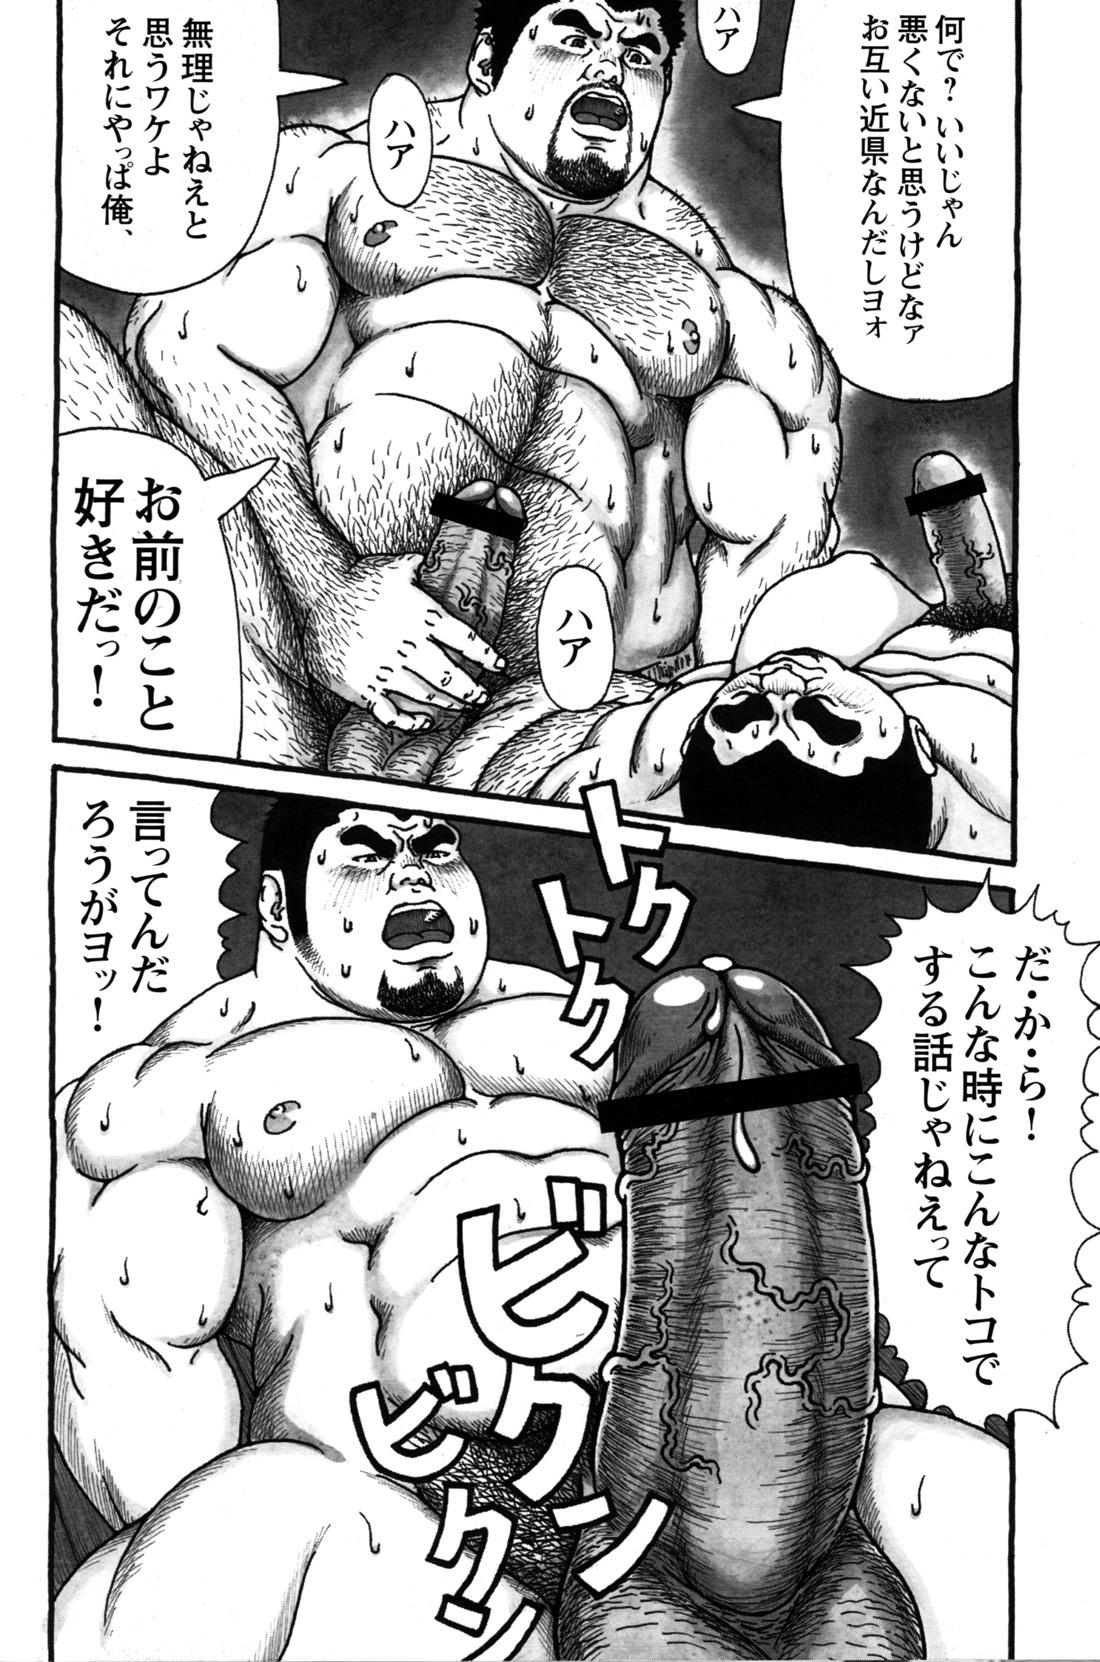 Comic G-men Gaho No.09 Gacchibi Zeme 155